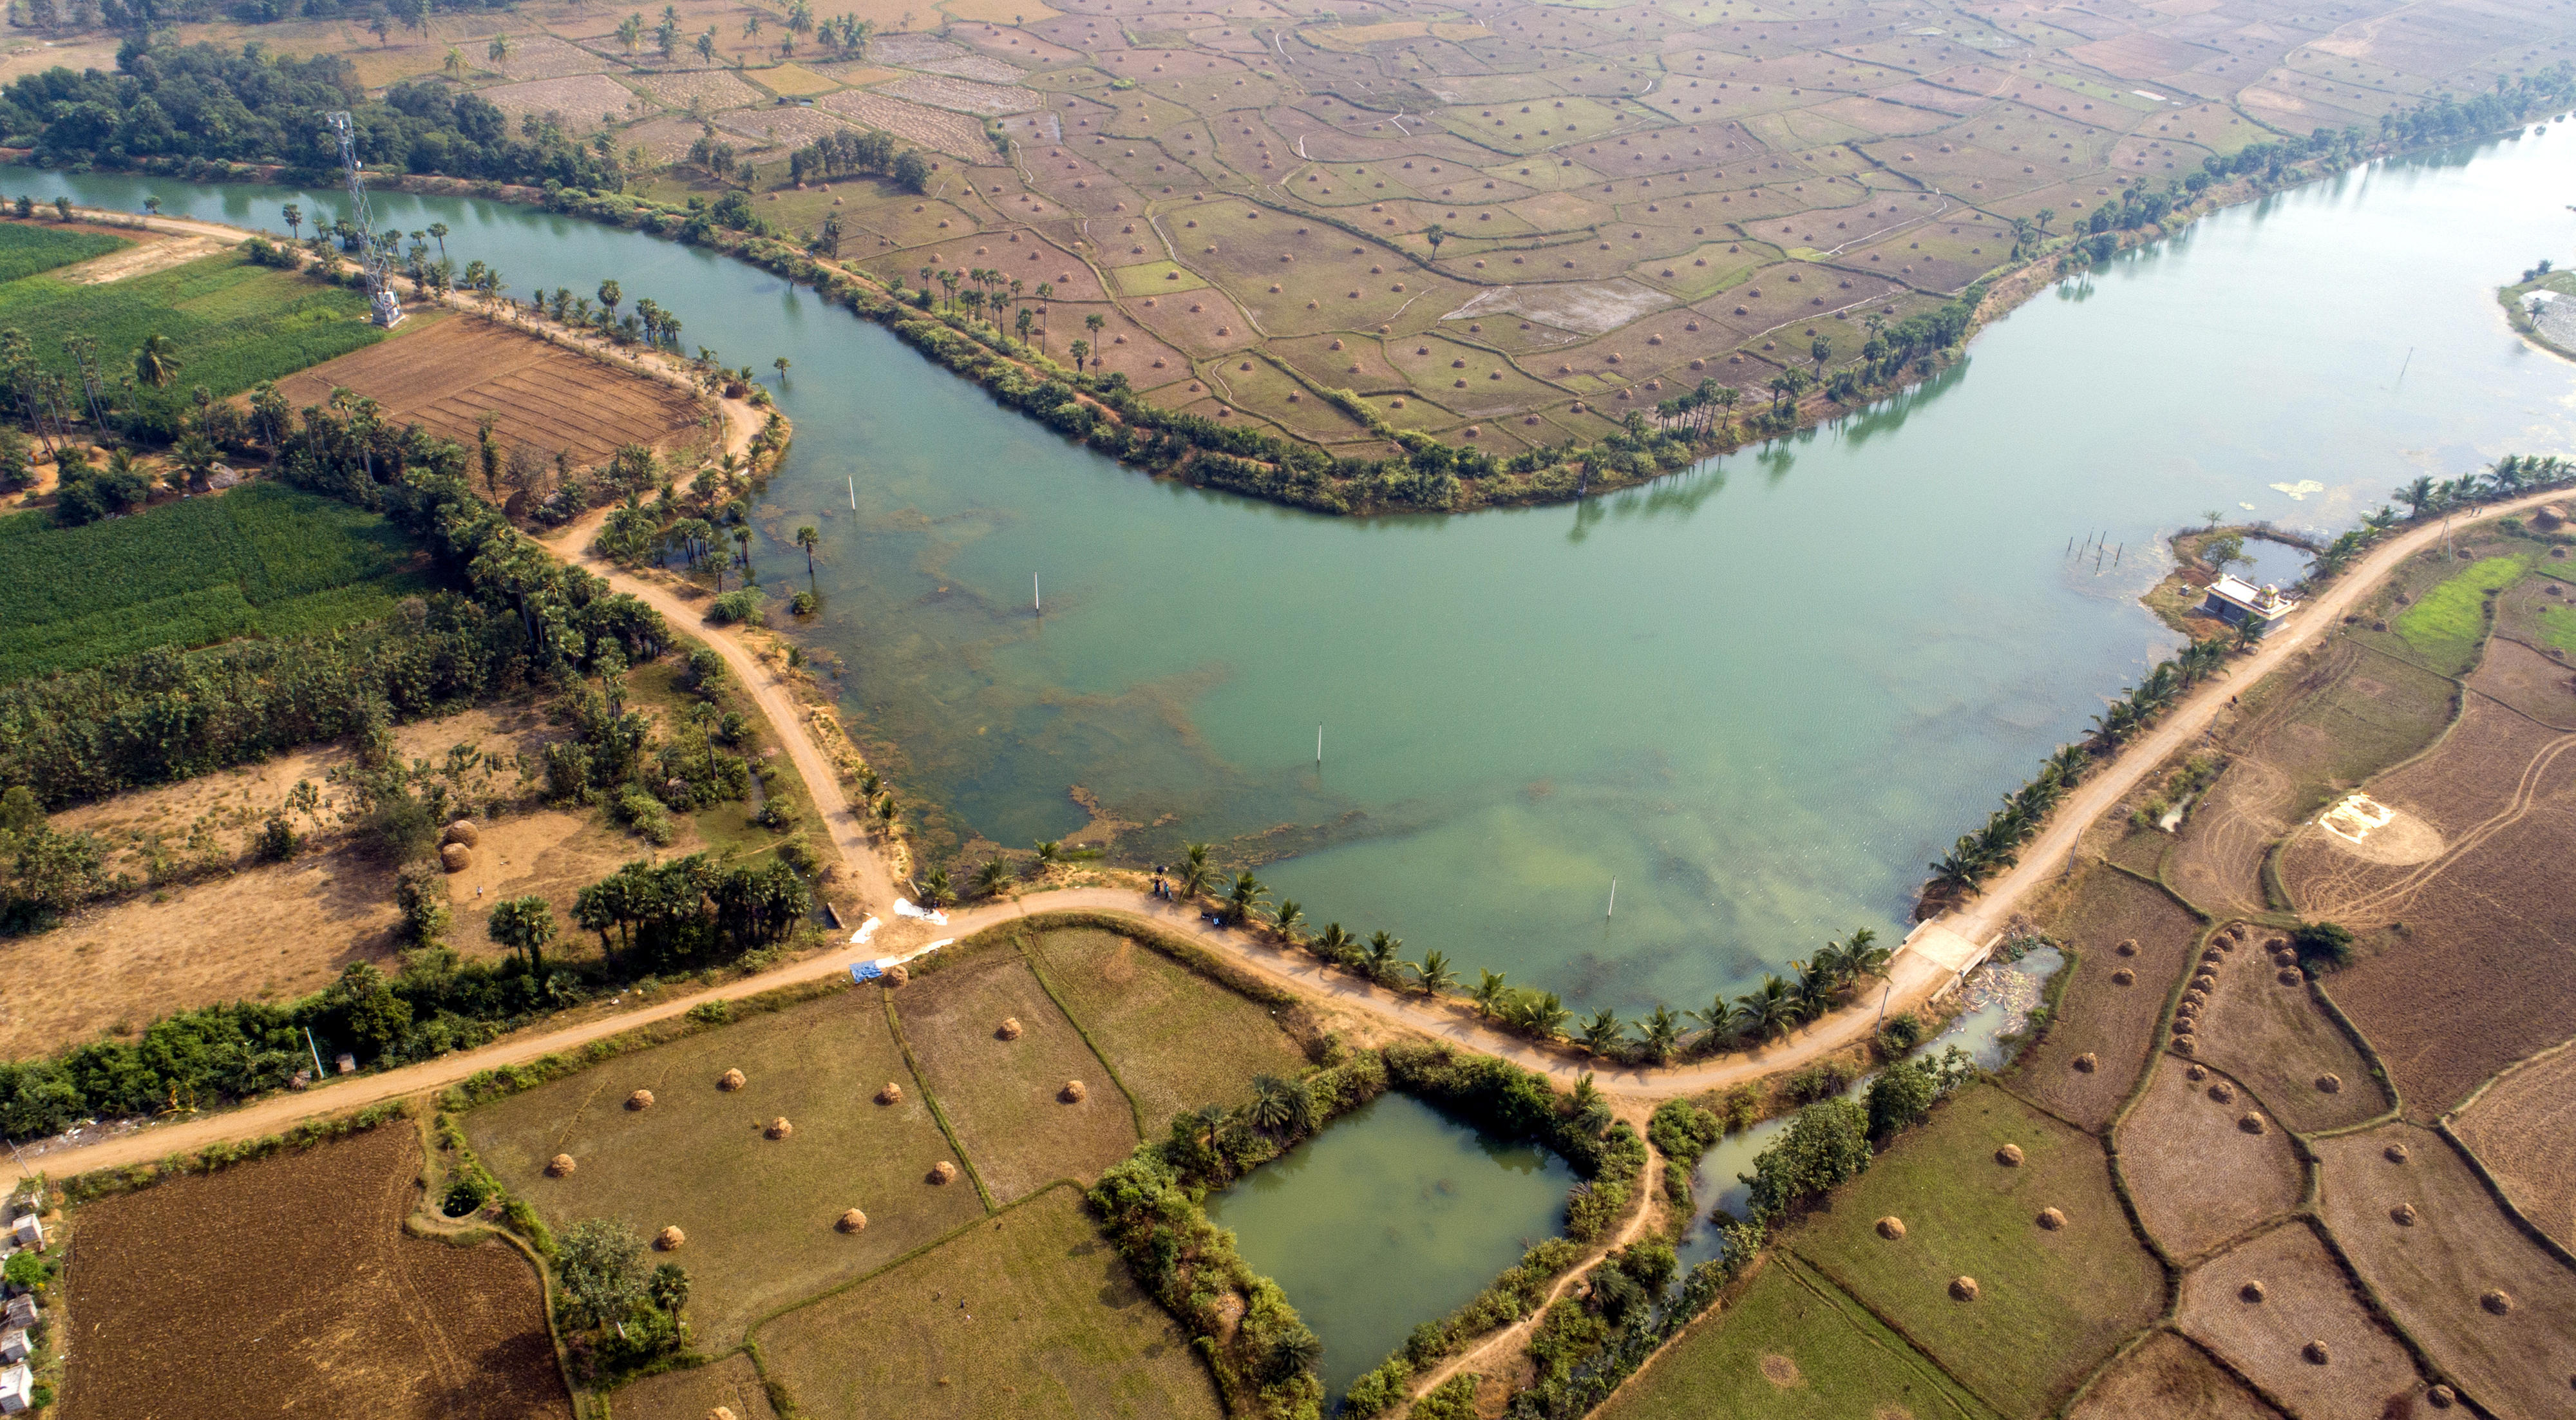 Luftbild: Wiederherstellung des Oracheruvu-Speichers im Garida-Kaskadensystem während der Pilotphase im Dorf Choadavaram zur Bewässerung der umliegenden Felder